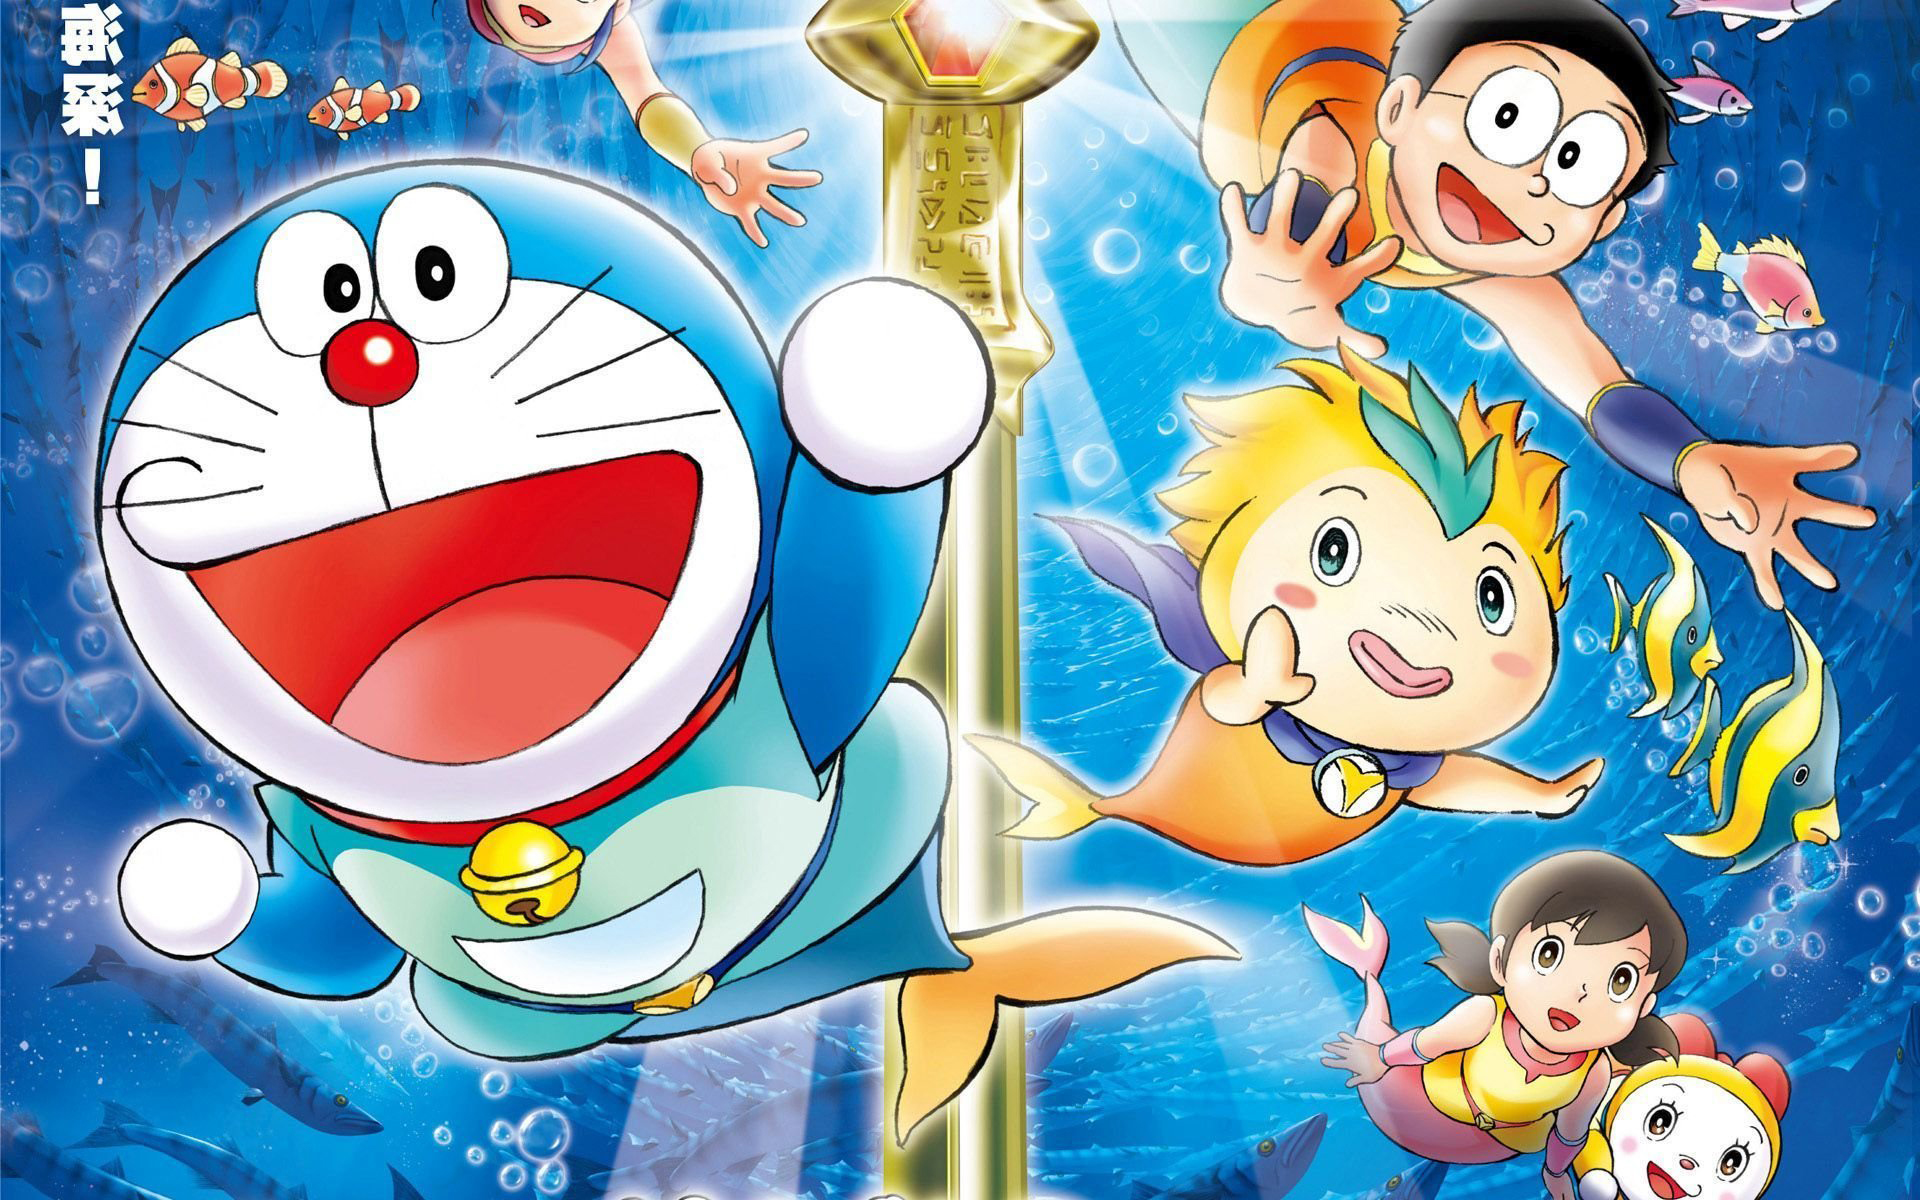 Những hình nền Doraemon Robot đầy sáng tạo sẽ khiến bạn có những trải nghiệm thú vị mới lạ. Hãy xem ngay để khám phá và sử dụng làm nền cho màn hình điện thoại của mình thôi nào!